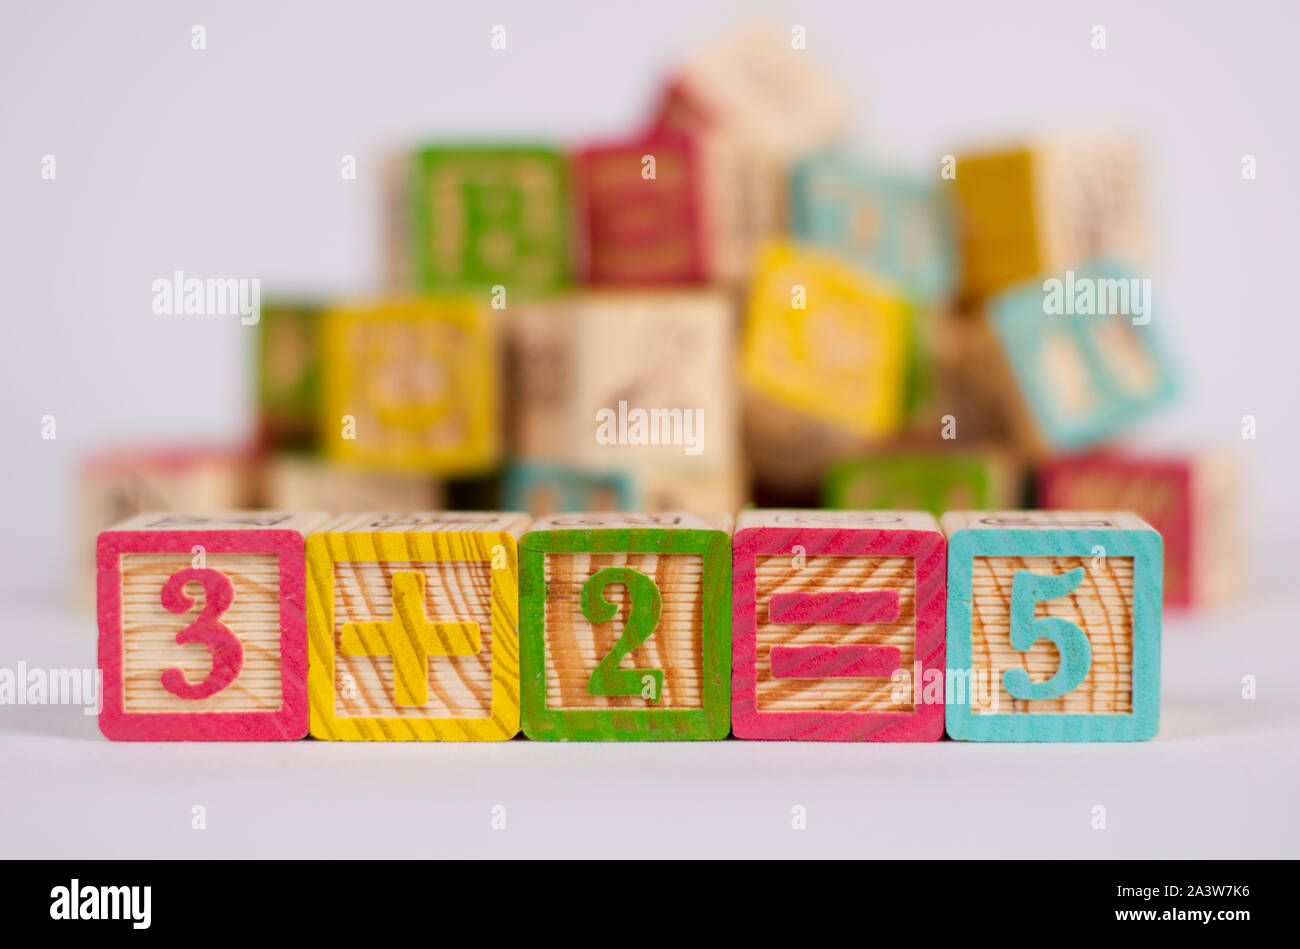 Los números "3+2=5' en bloques de madera de colores, con una luz de fondo. Perfecto para un original y divertido bebé tarjeta o invitación para una babyshower. Foto de stock